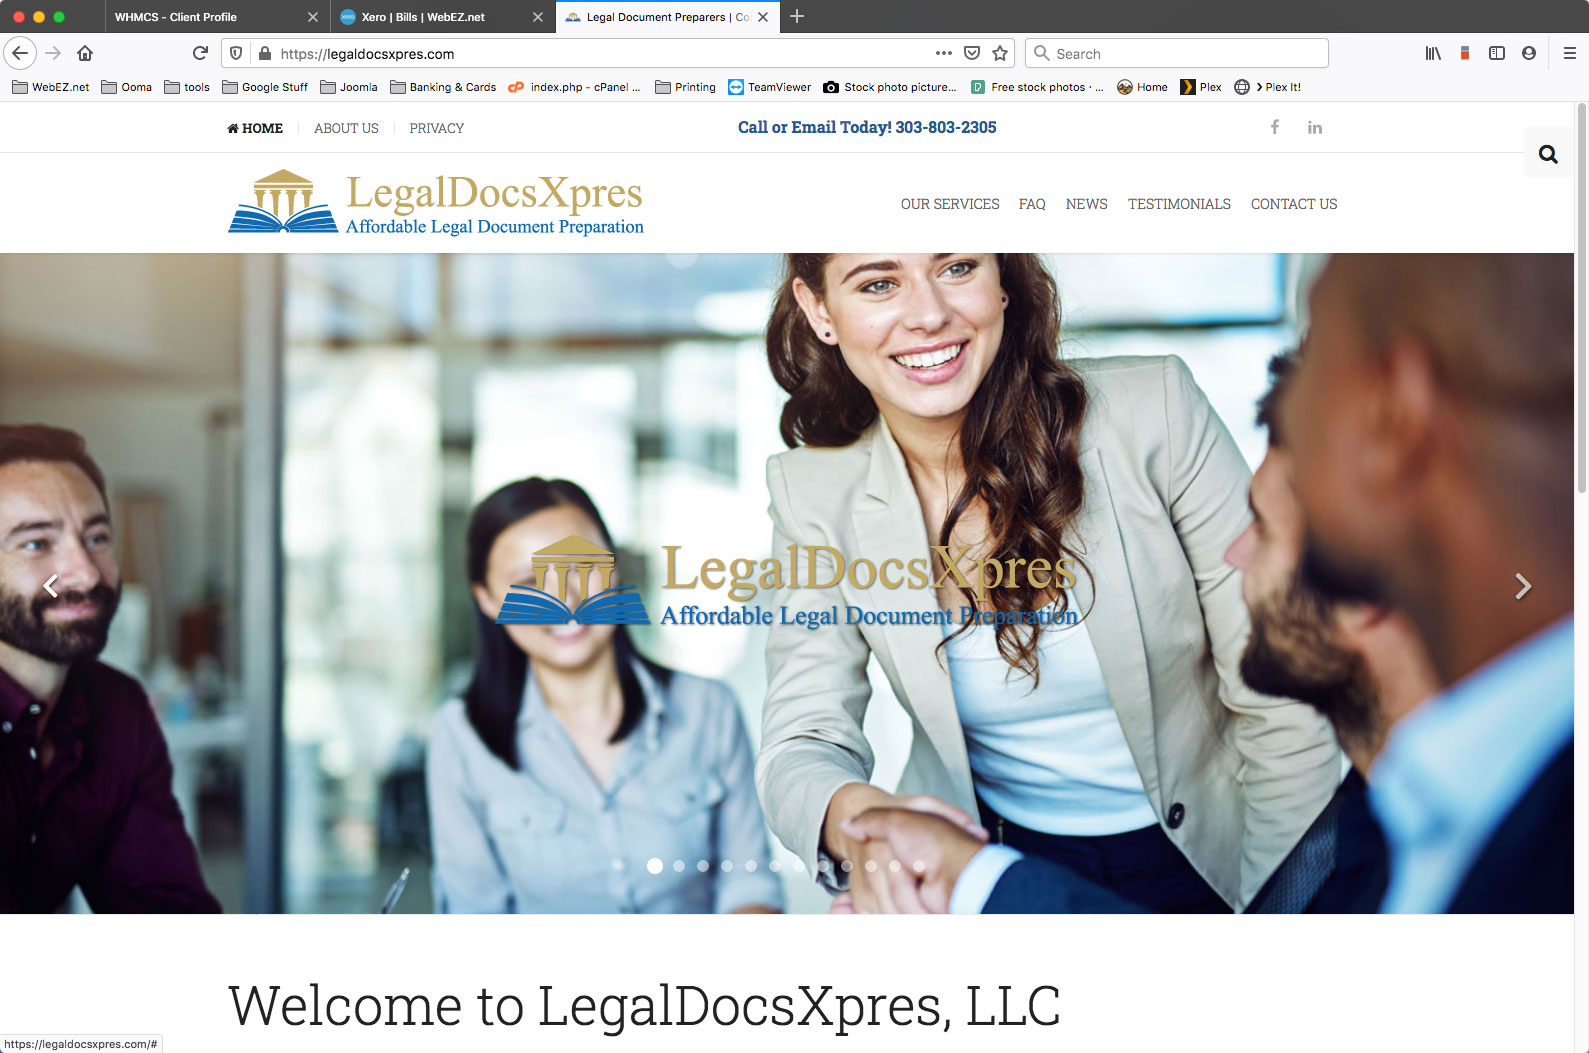 LegalDocsXpres, LLC